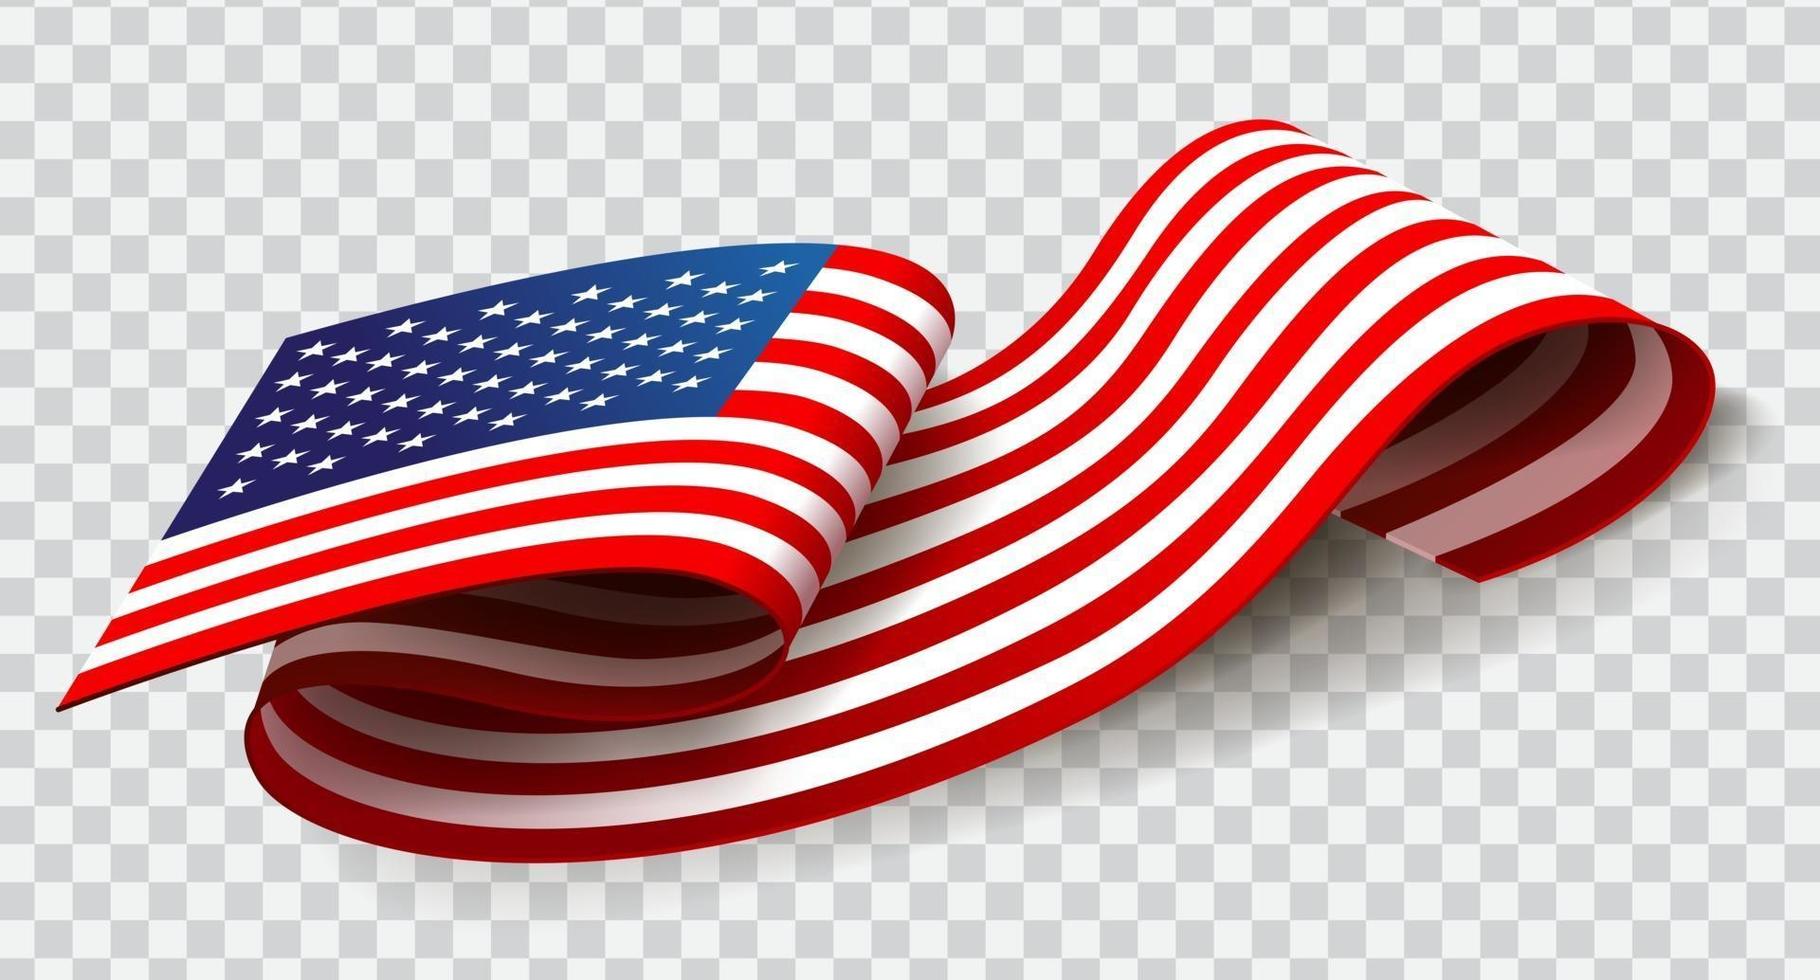 Stati Uniti d'america sventolando bandiera su sfondo trasparente per il 4 luglio. vettore